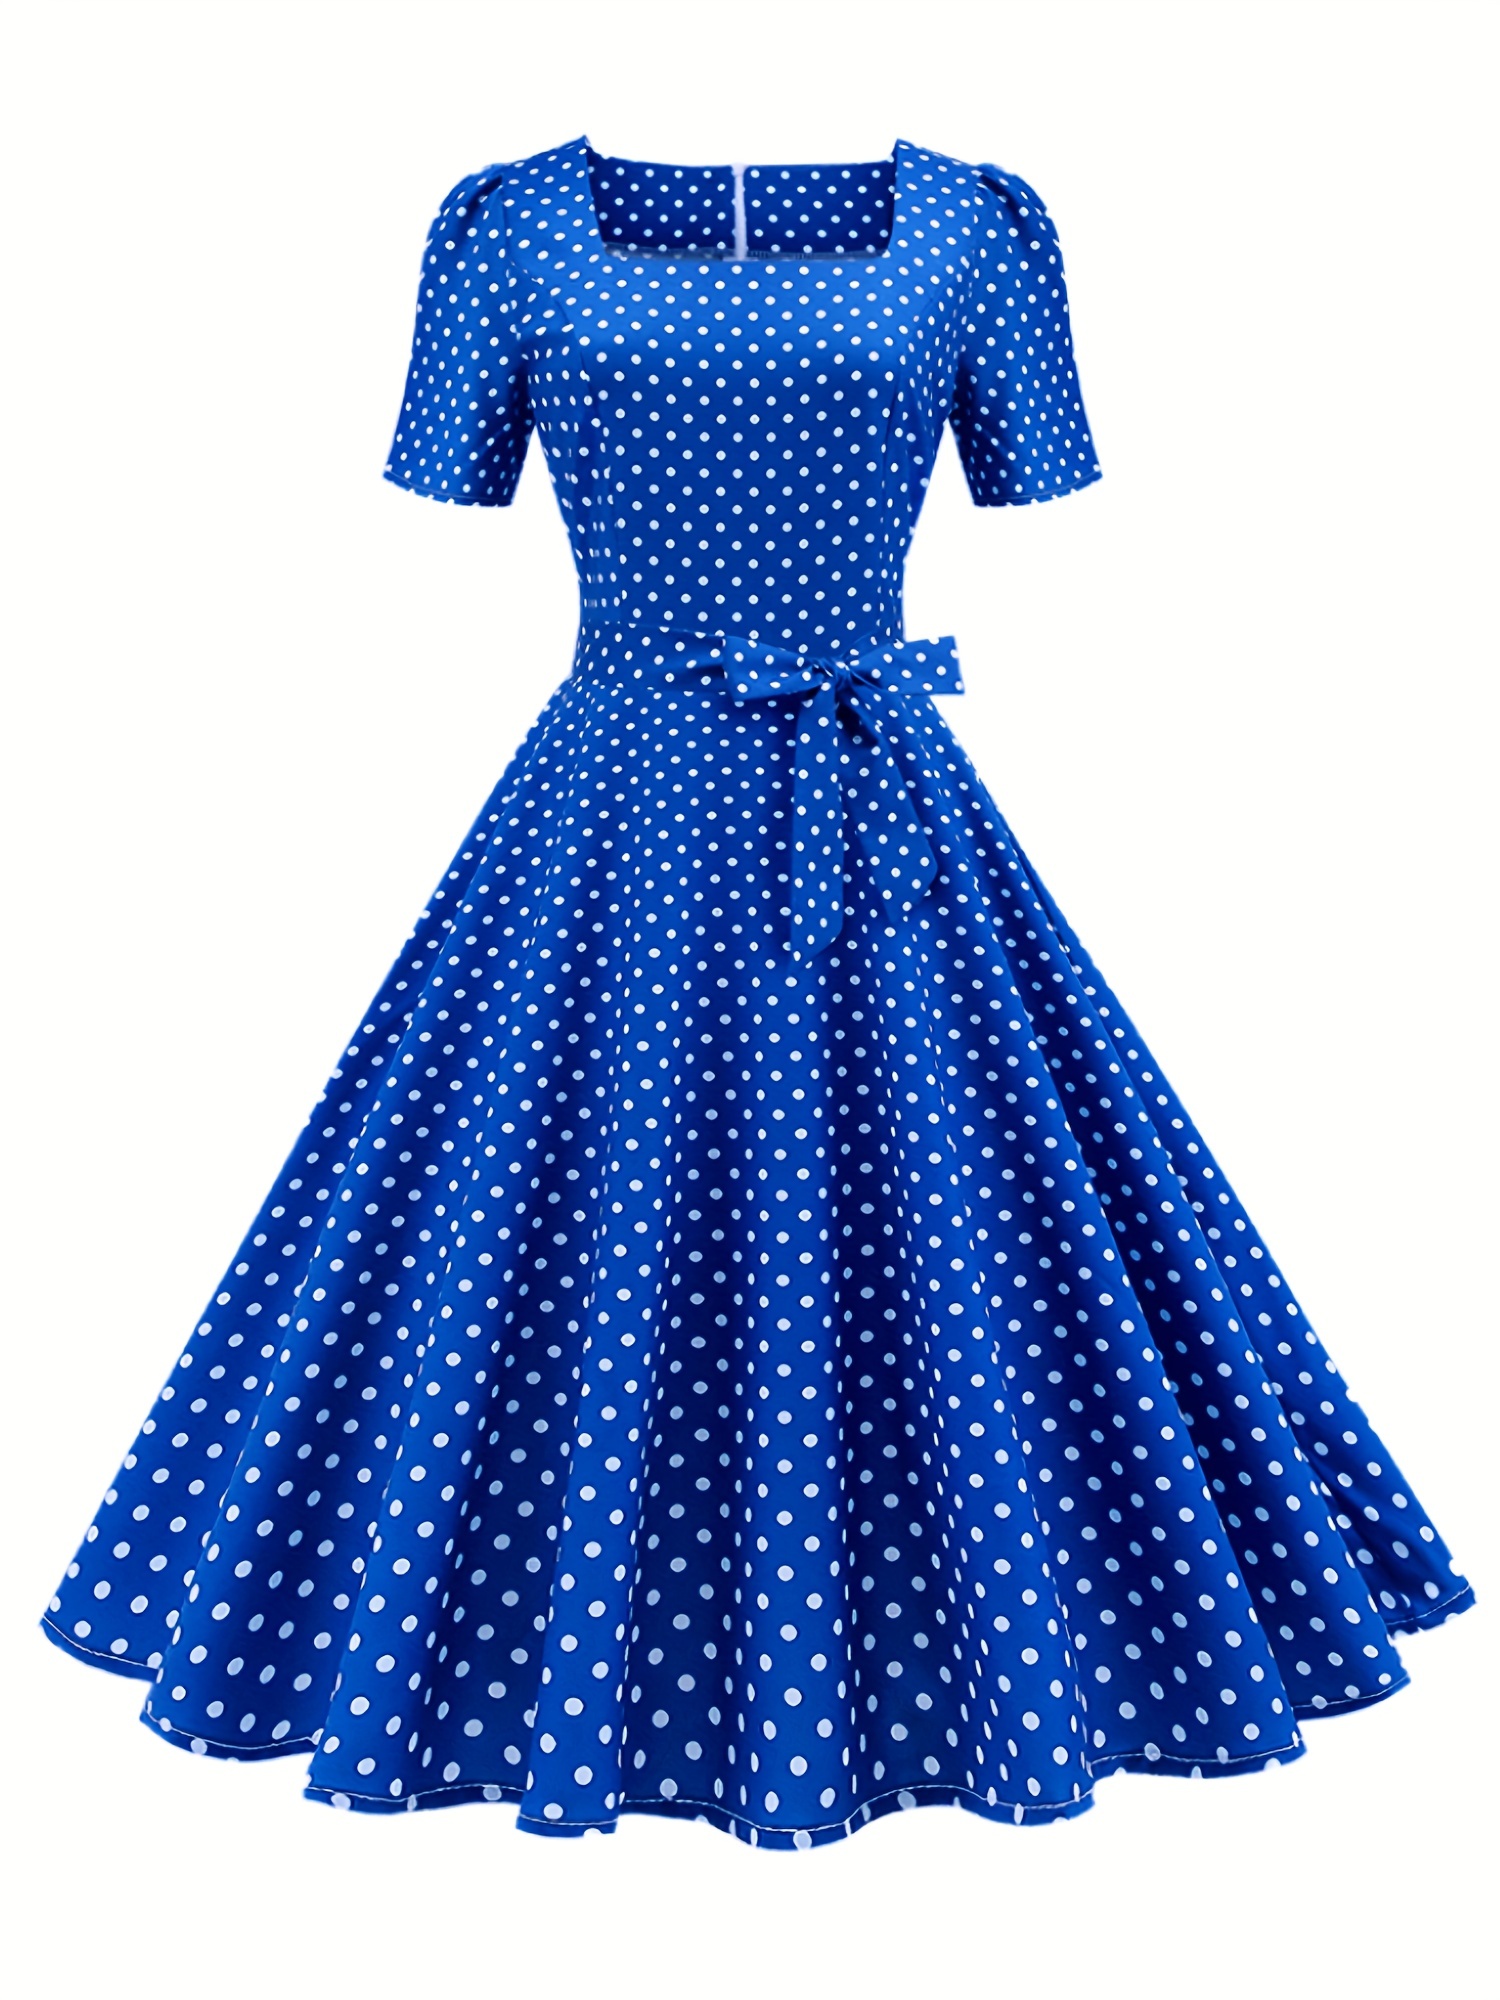 Vestidos vintage de los años 50 para mujer, diseño a cuadros/liso, de manga  corta, estilo rockabilly, retro, para fiesta, cóctel, vestido de té por